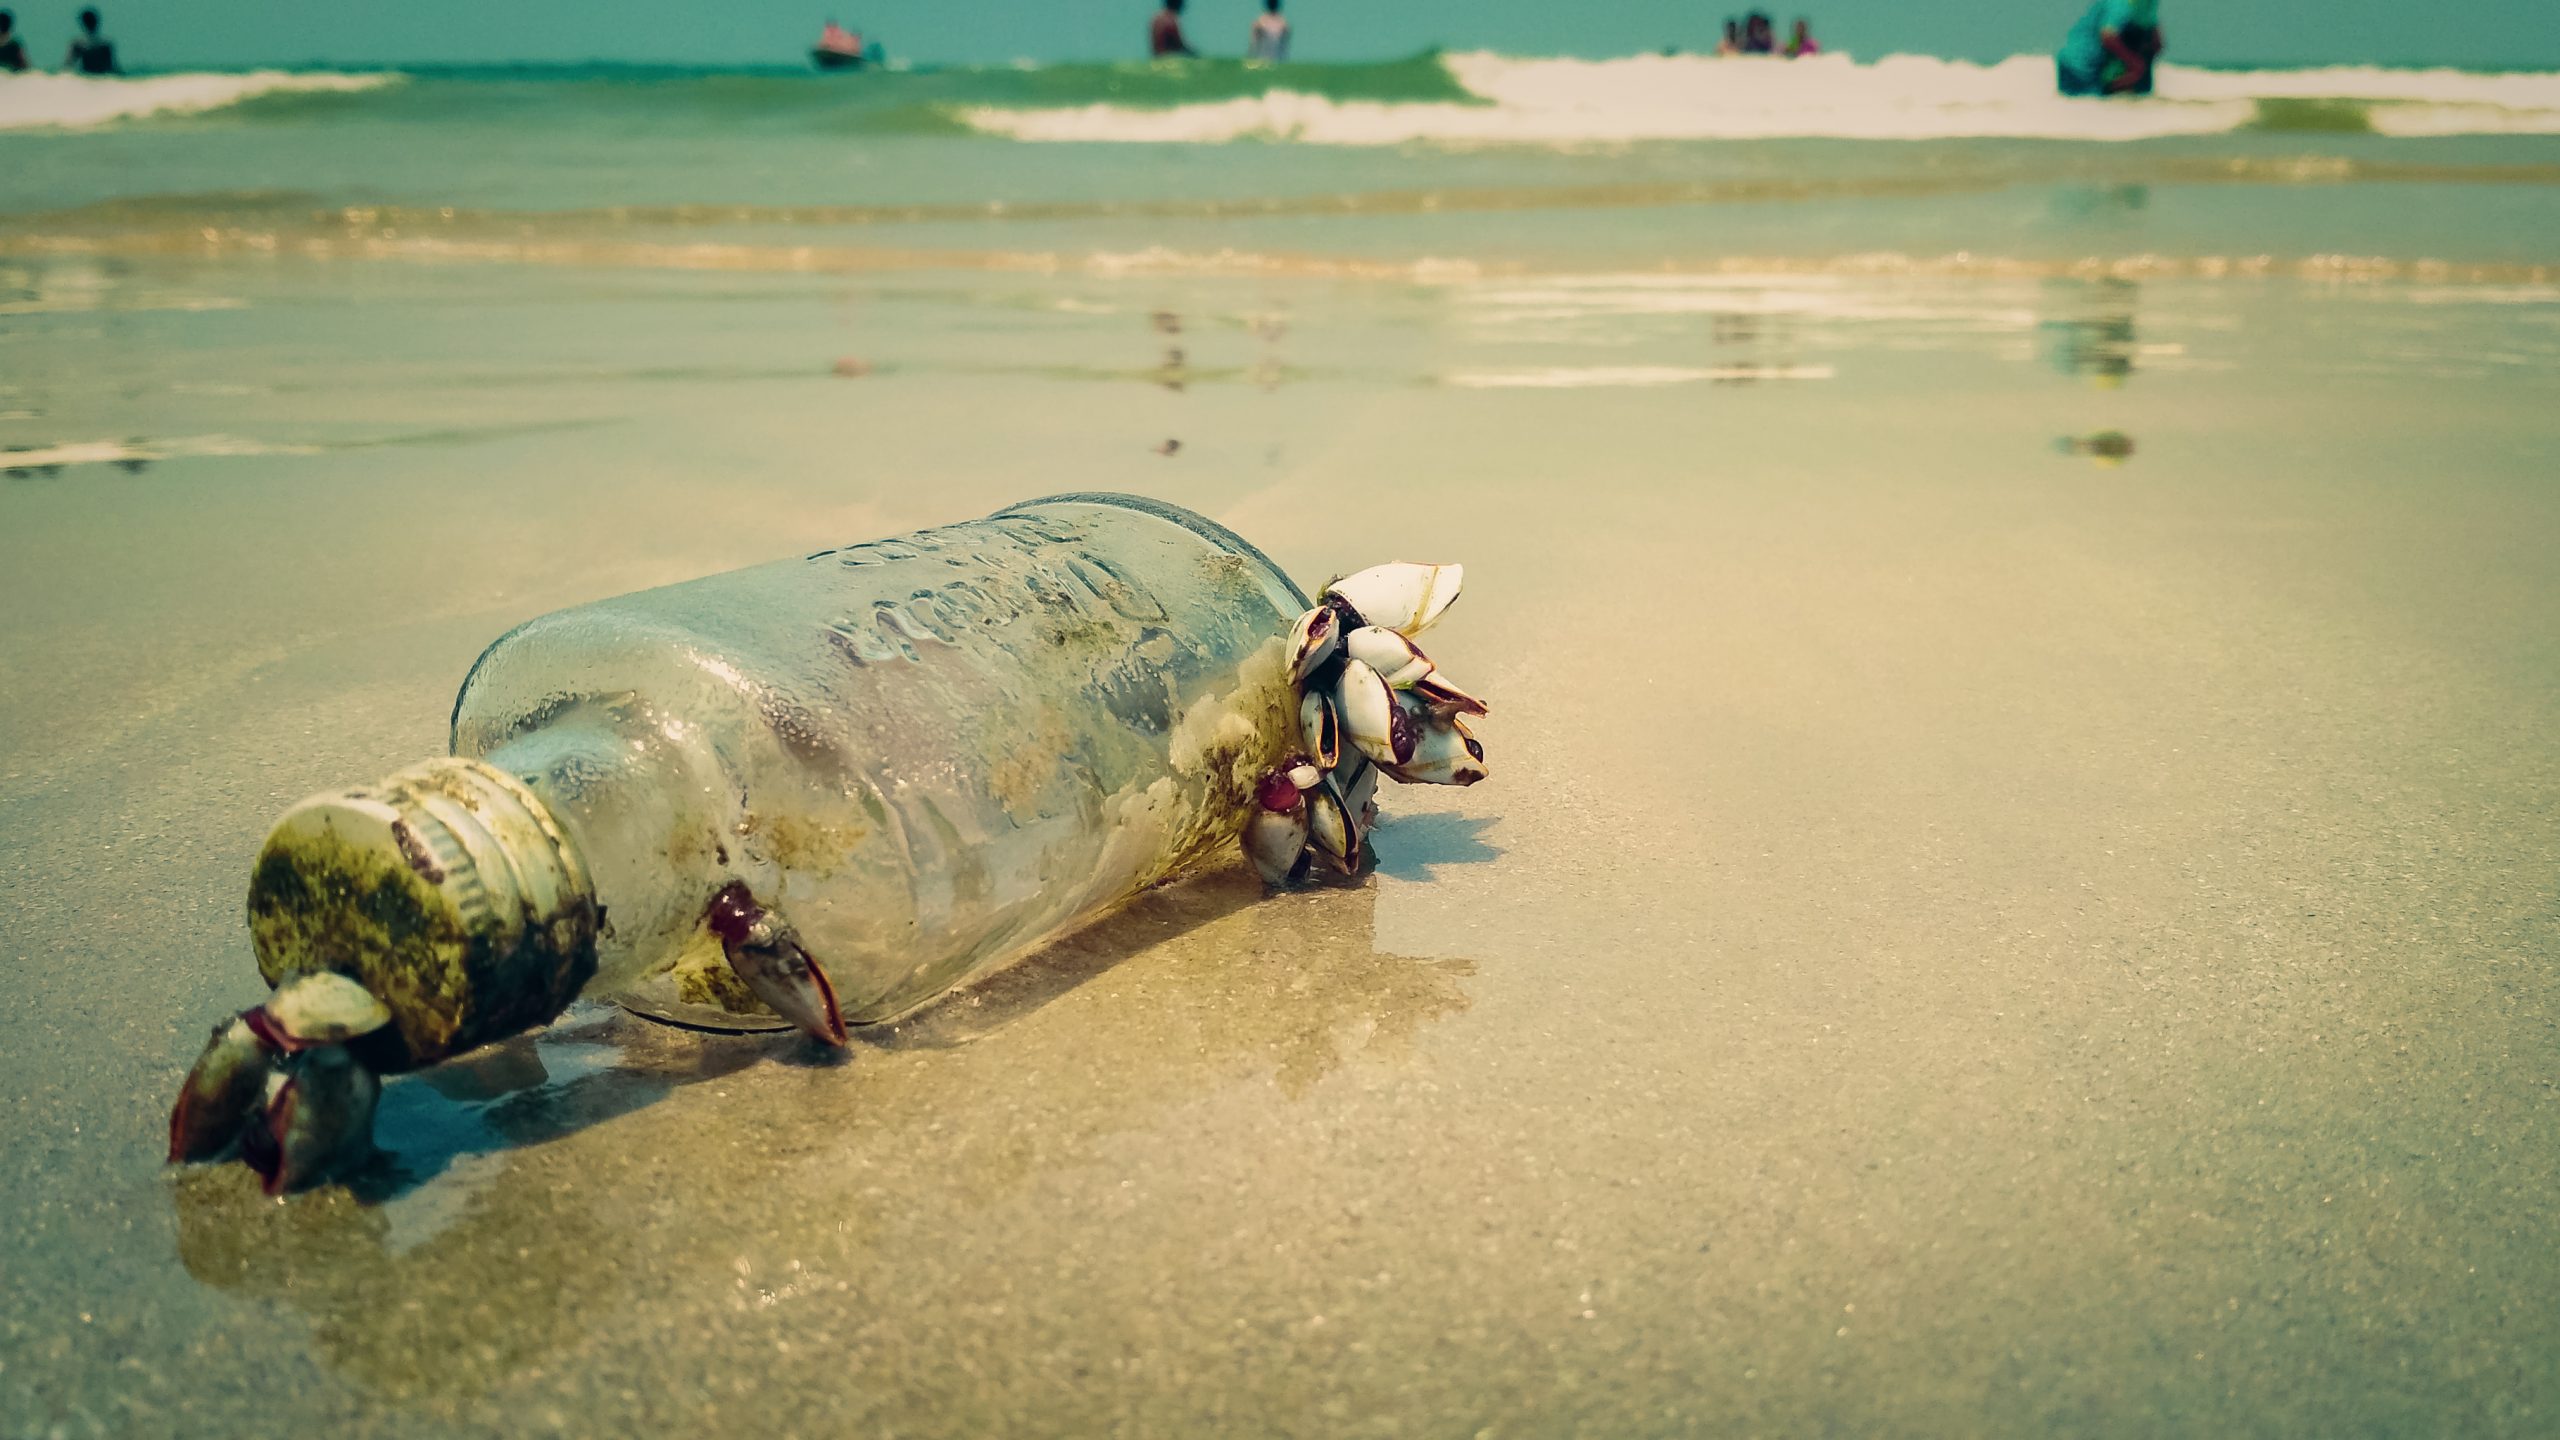 An empty glass bottle on a beach